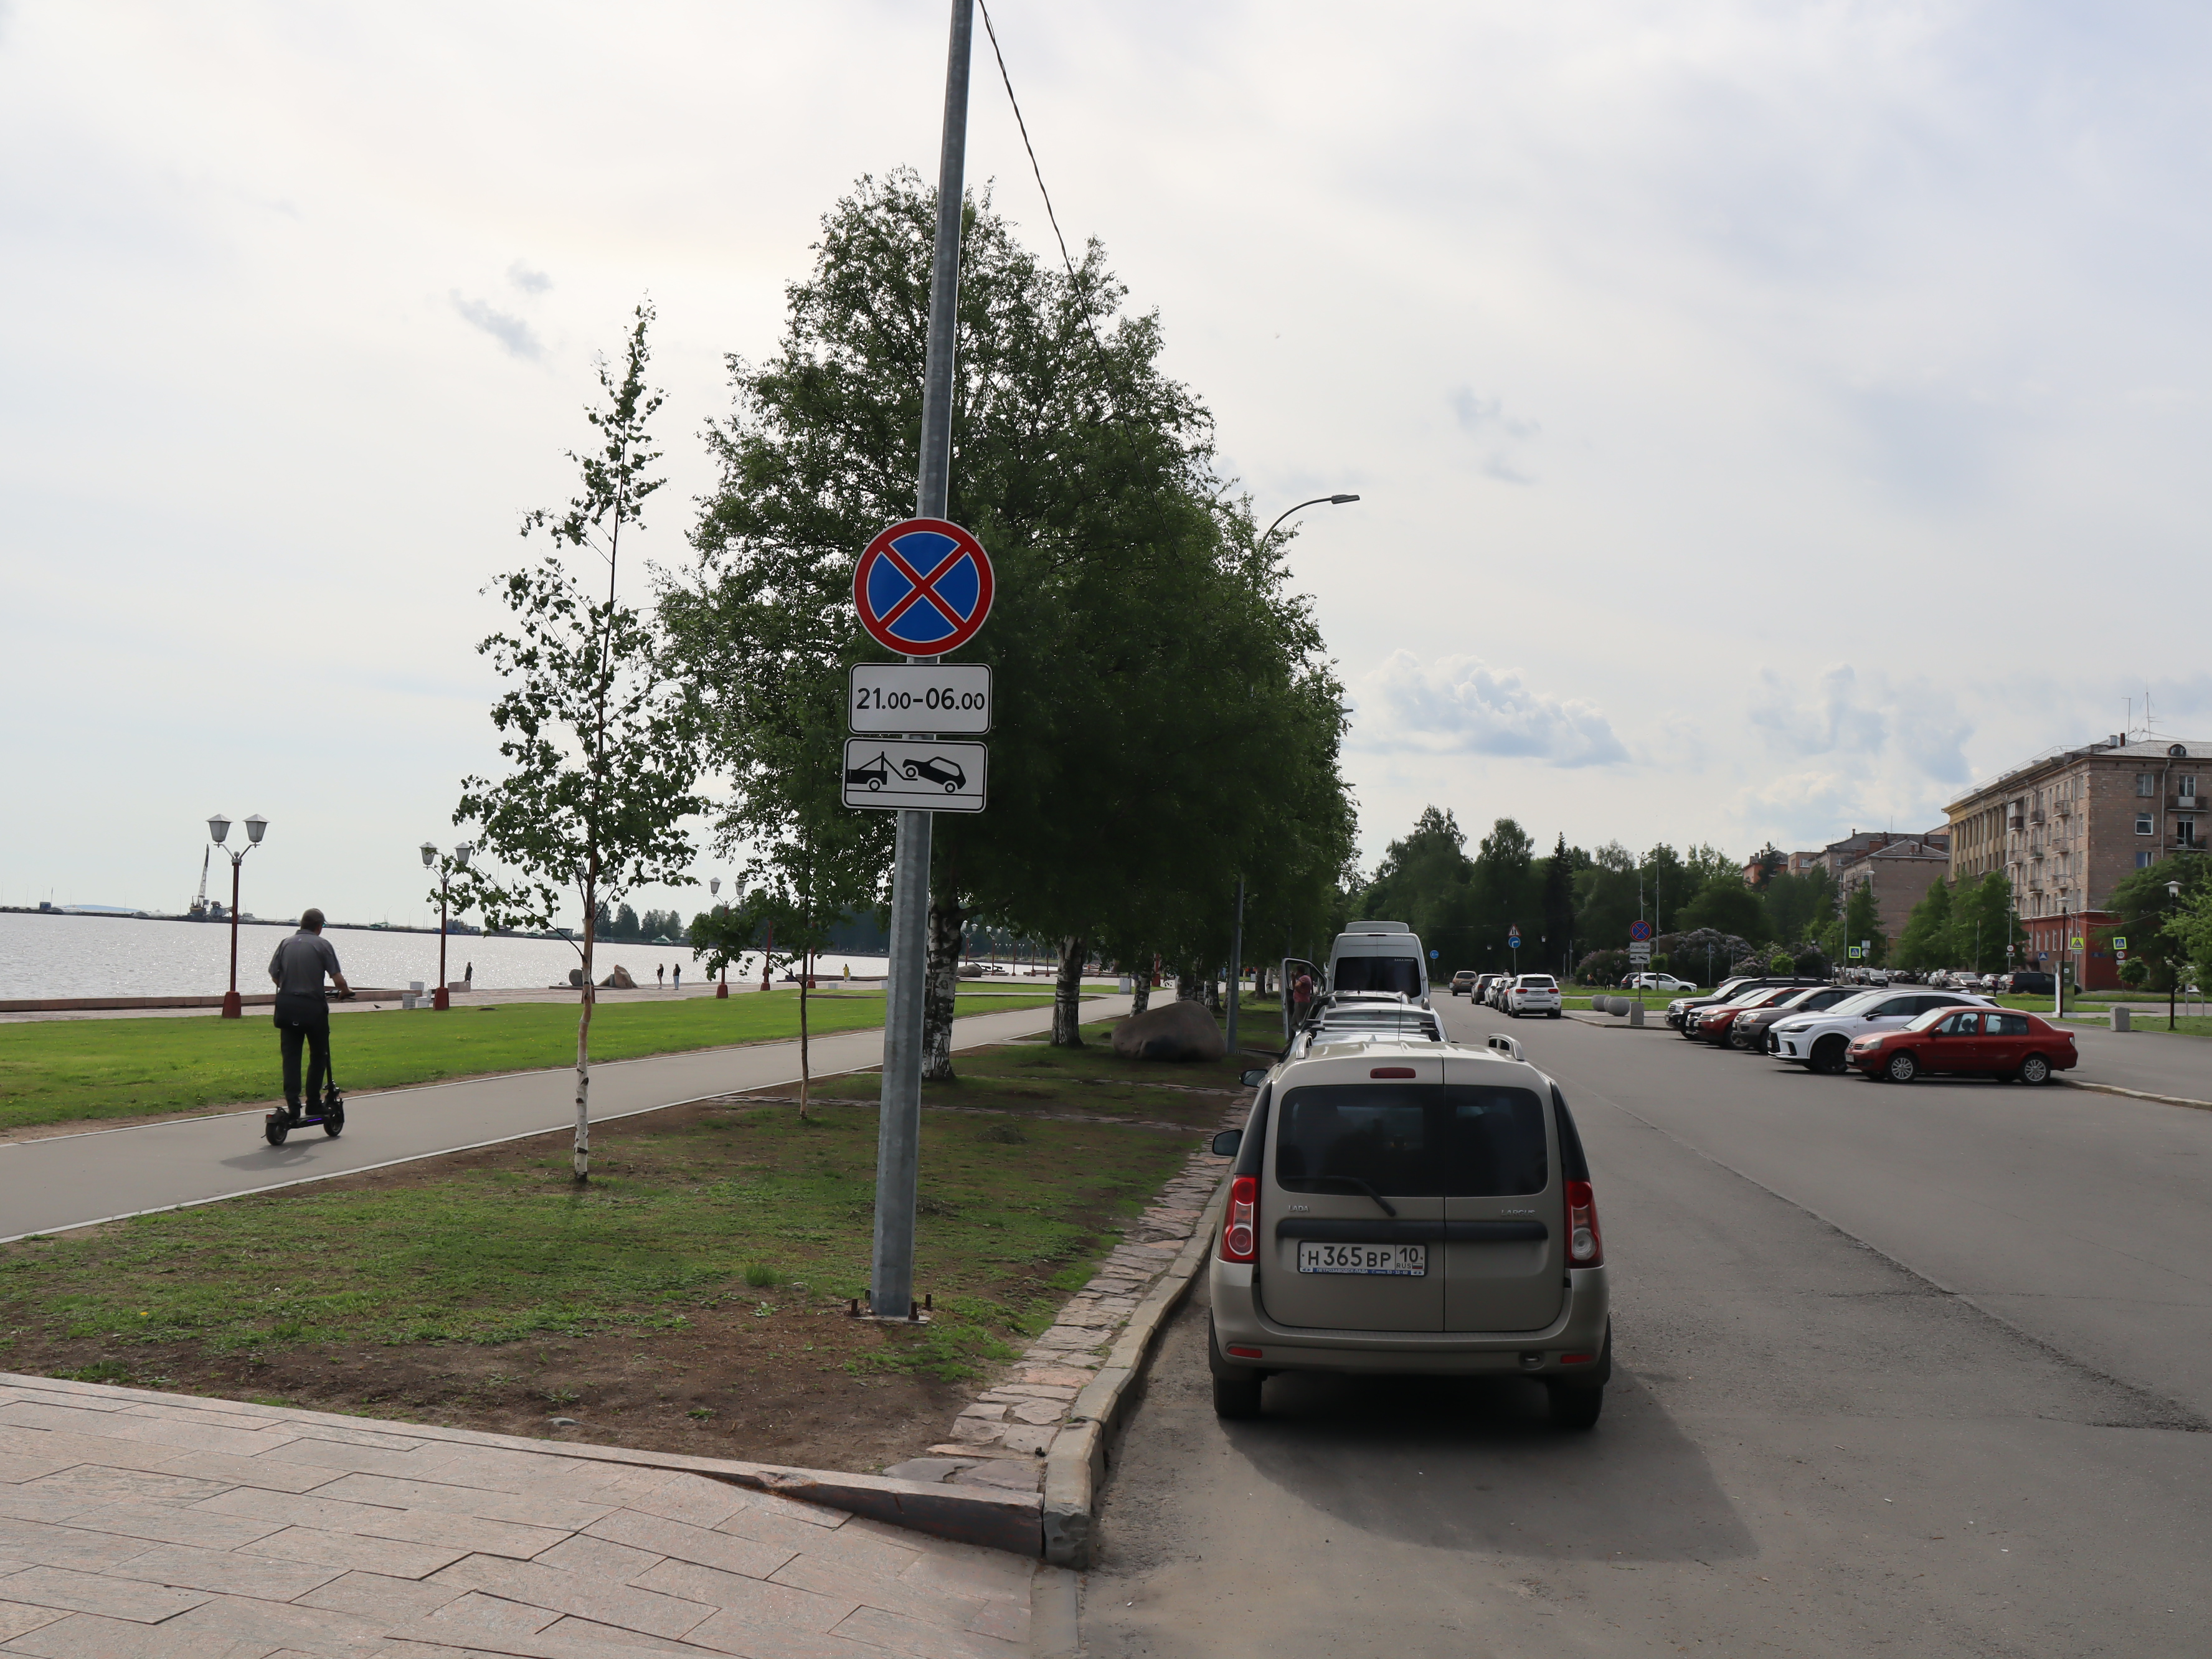 Руководство Петрозаводска не хочет объяснять расстановку дорожных знаков